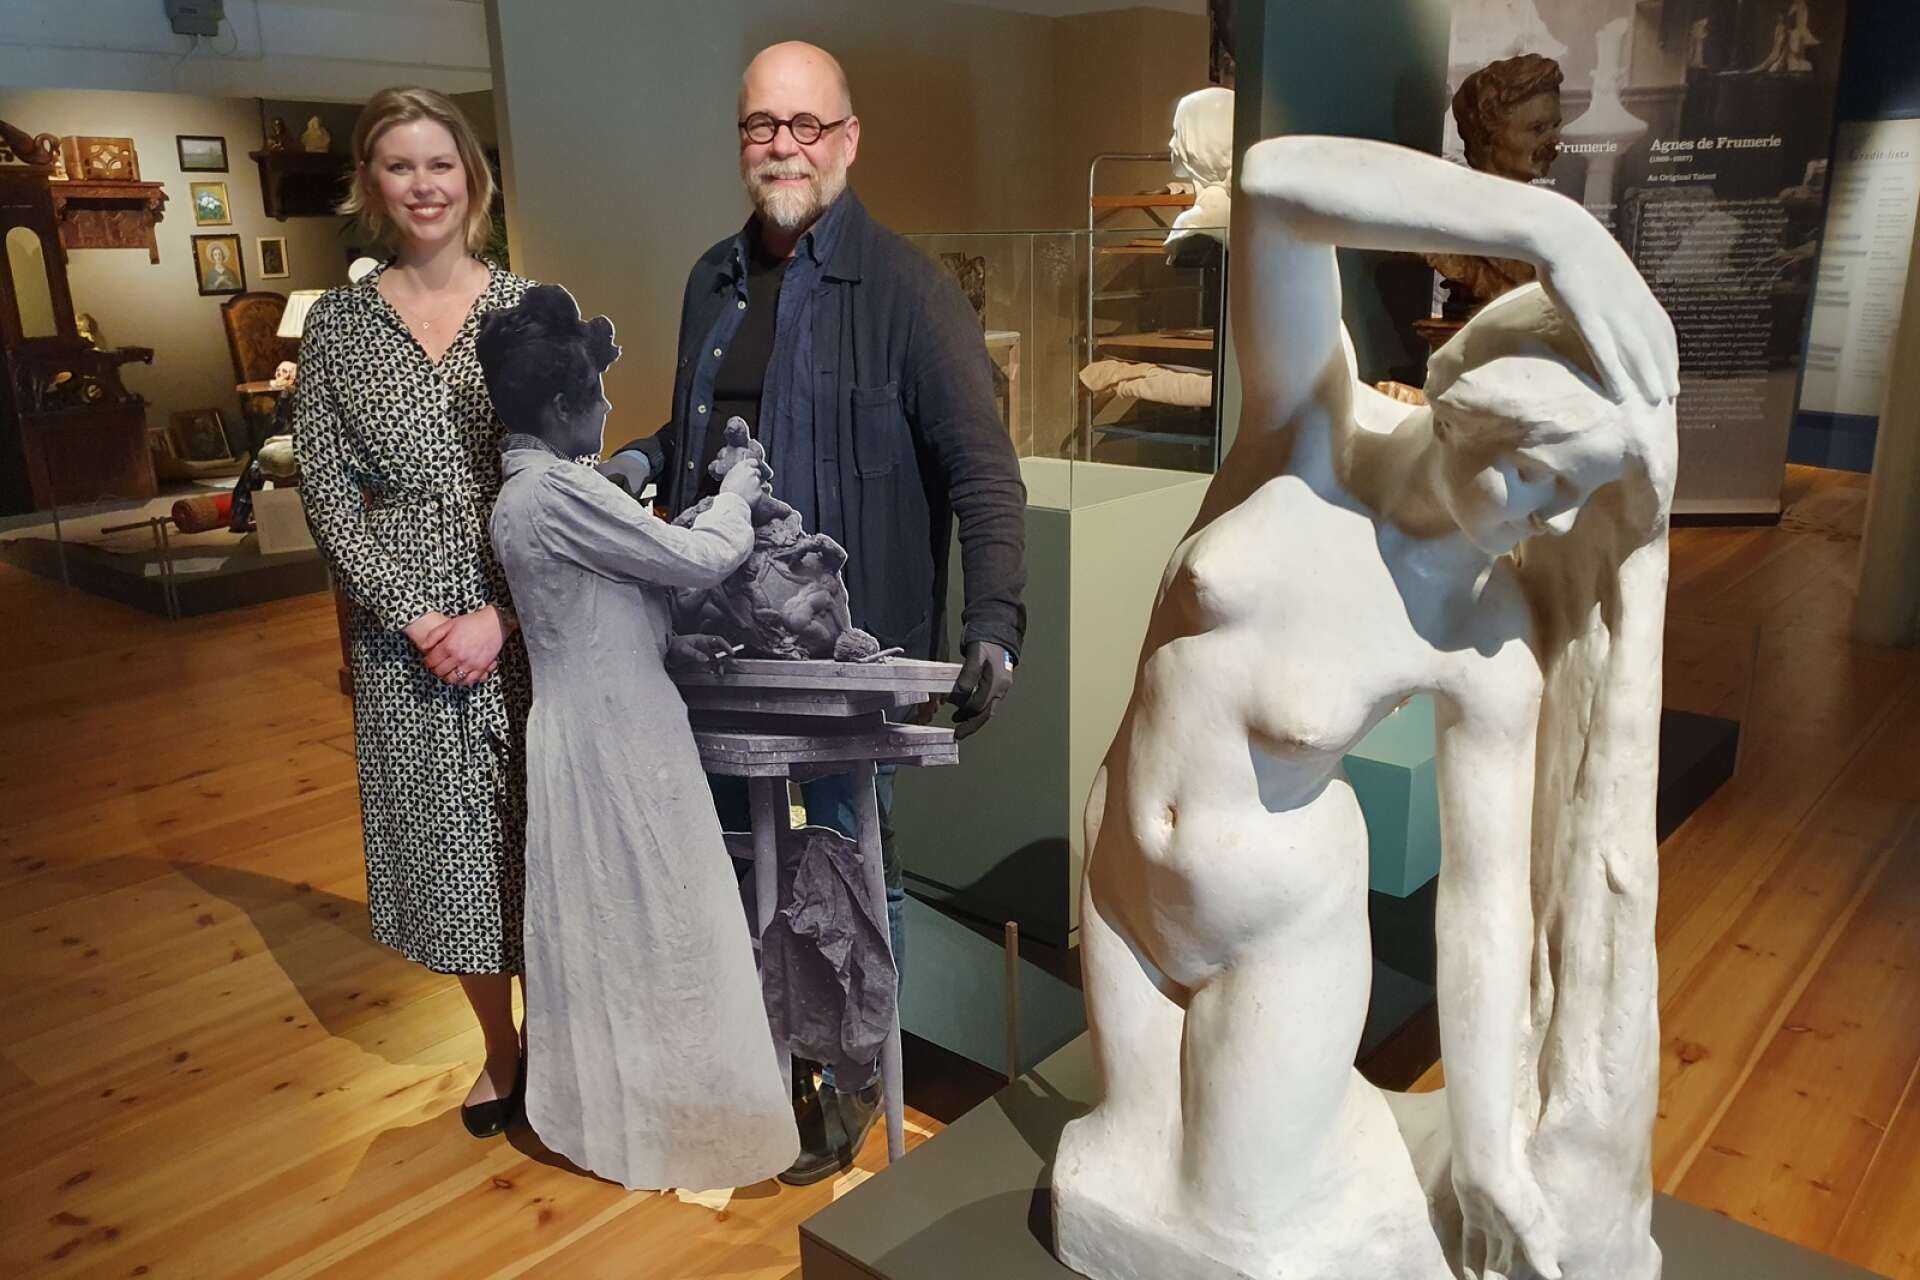 Emelie Byström och Peter Nordin på Västergötlands museum i Skara. Pappfiguren visar Agnes de Frumieres i naturlig storlek och statyn heter ”Vatten”.